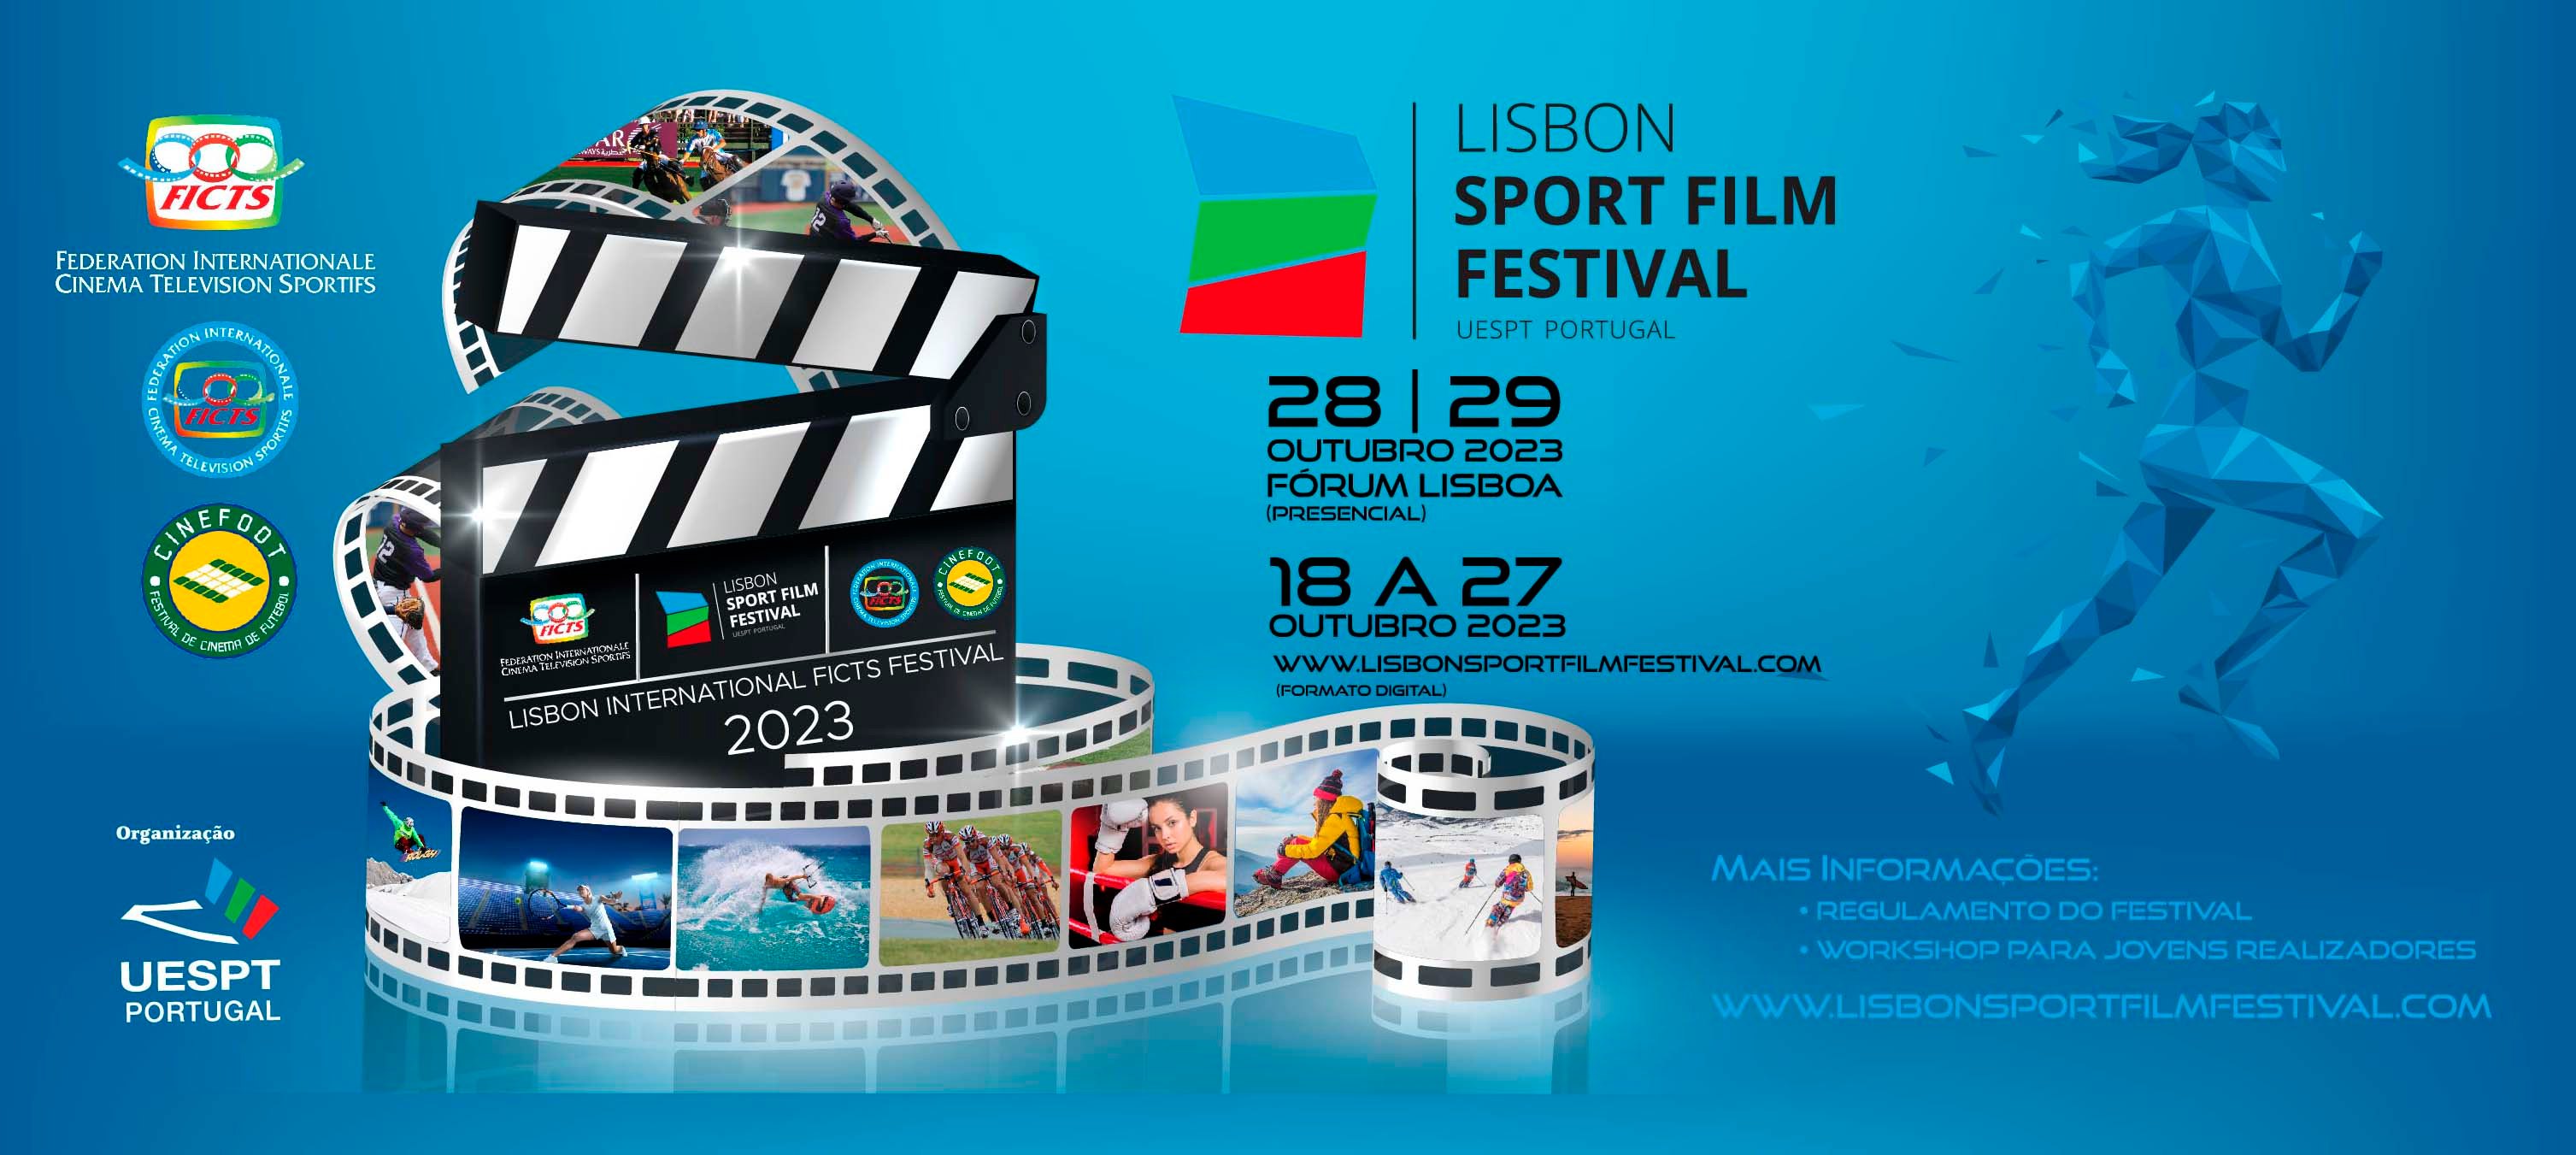 Edição de 2023 do Lisbon Sport Film Festival